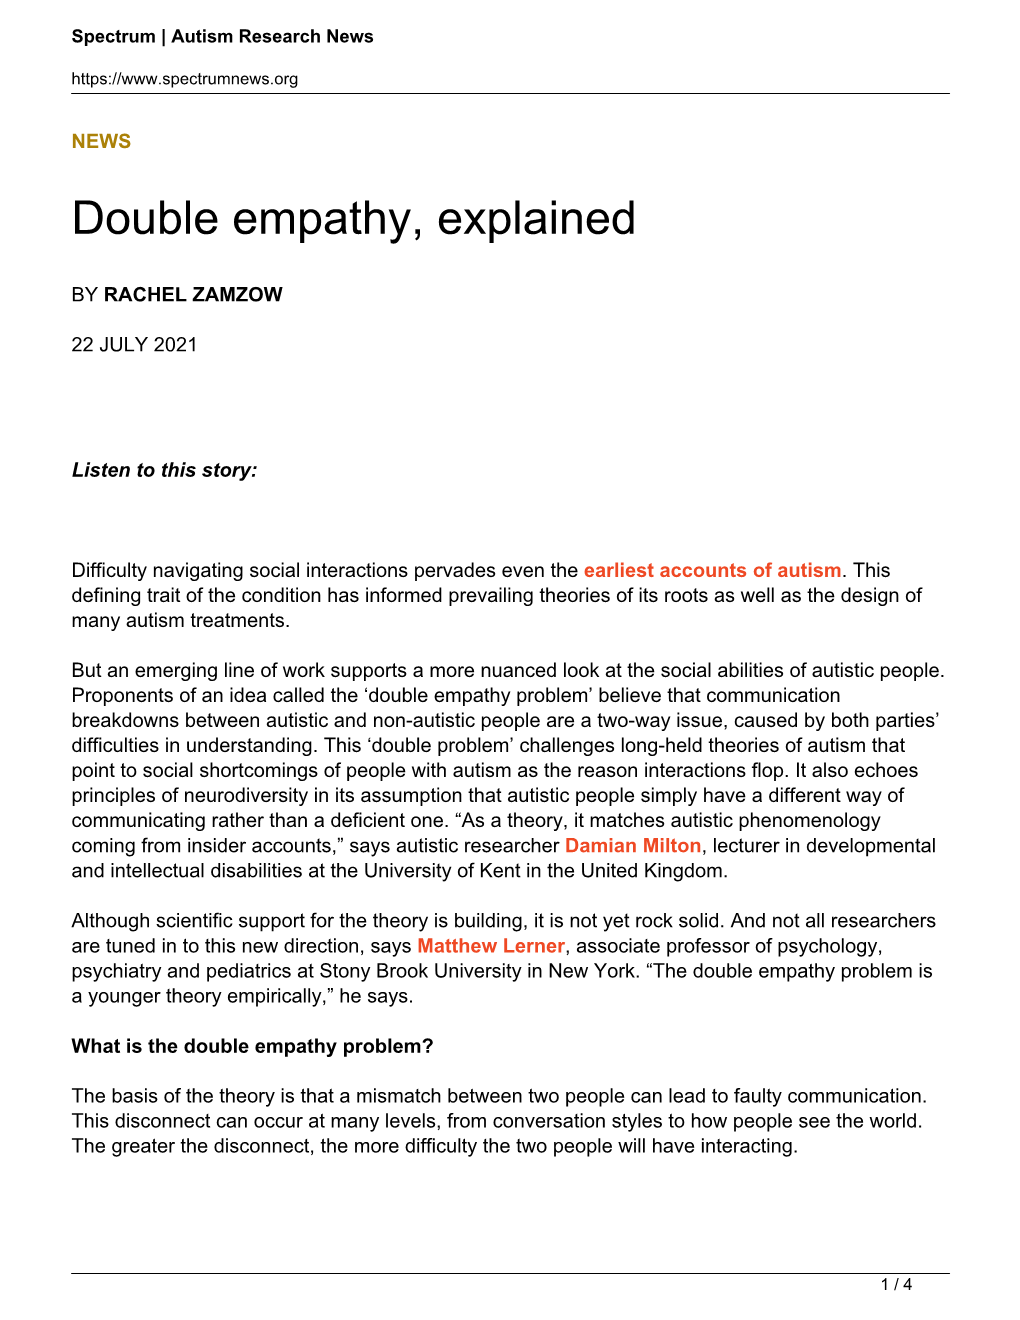 Double Empathy, Explained